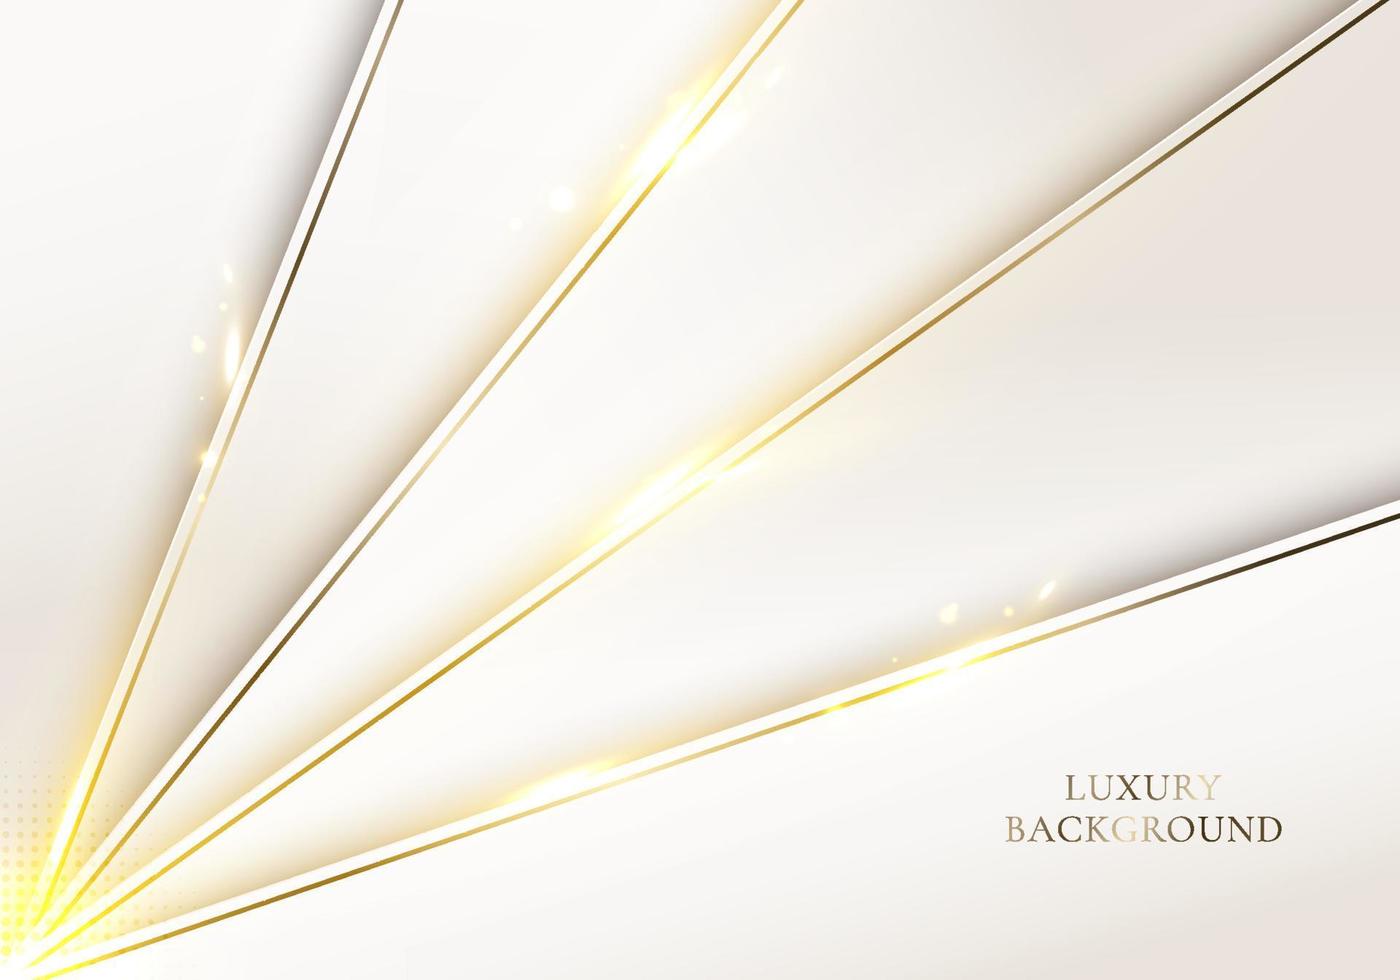 Diseño de plantilla de lujo moderno en 3d patrón de rayas diagonales blancas y luz de línea de brillo dorado que se enciende en un fondo limpio vector